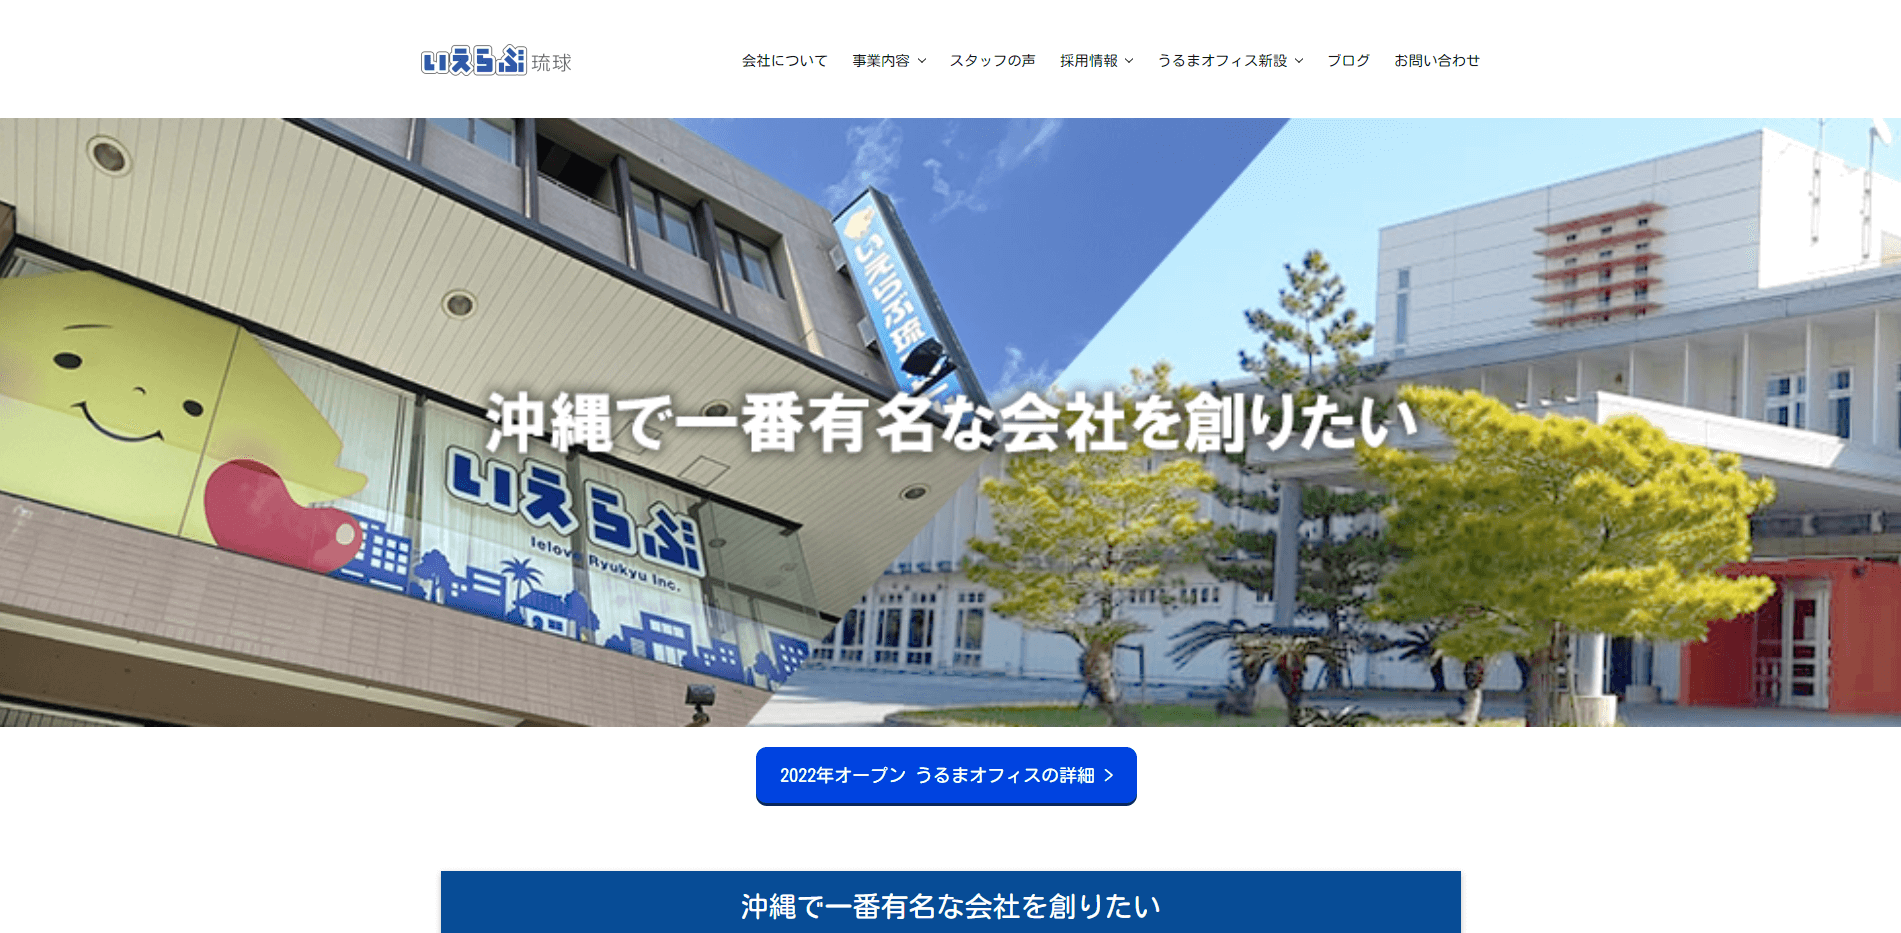 株式会社いえらぶ琉球ホームページのスクリーンショット